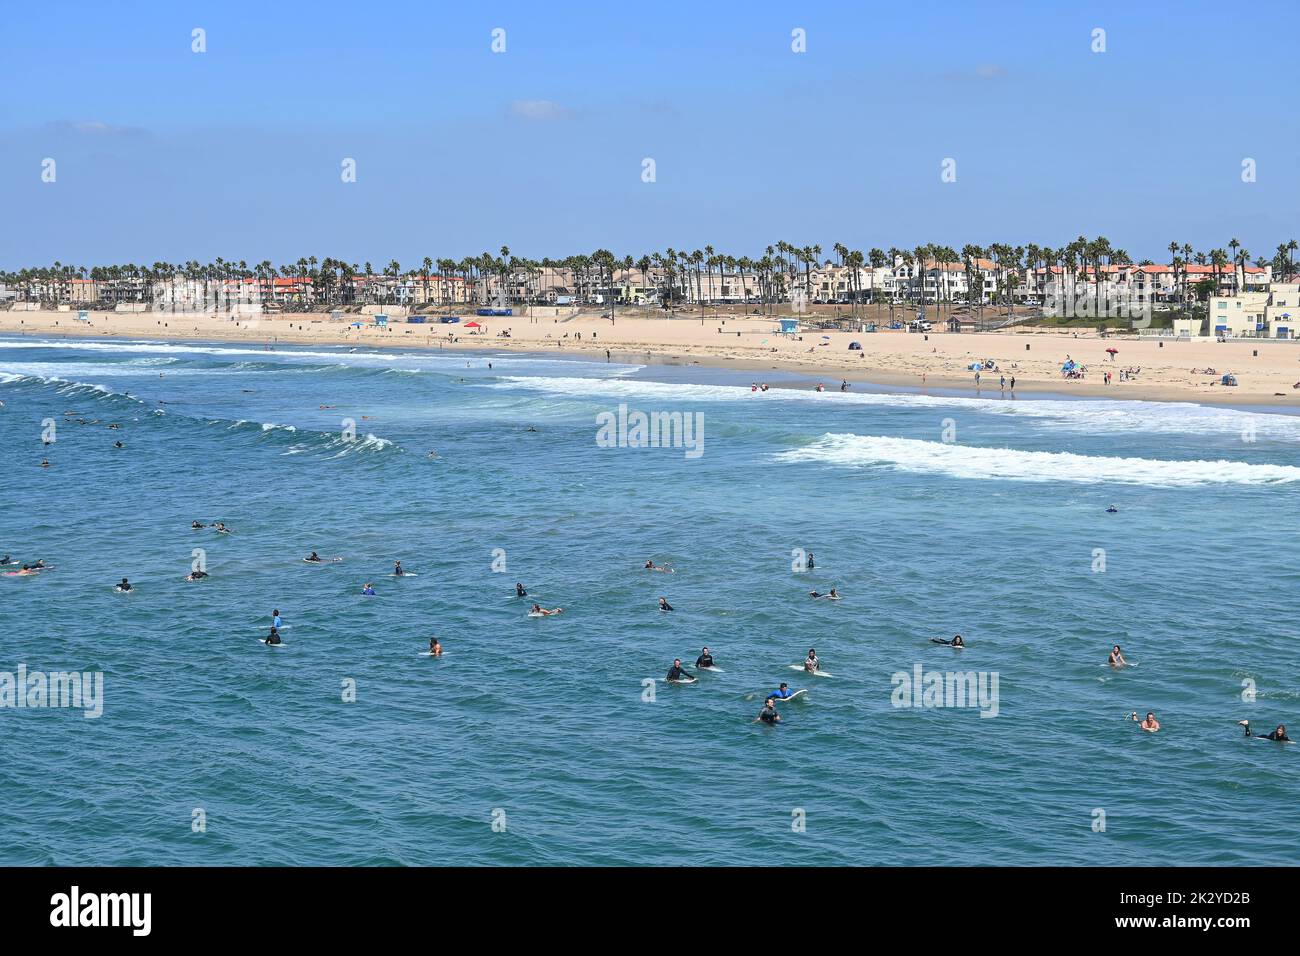 HUNTINGTON BEACH, CALIFORNIA, 19 DE SEPTIEMBRE de 2022: Un gran grupo de surfistas en sus tablas en el muelle de Huntington Beach durante el surf internacional Foto de stock